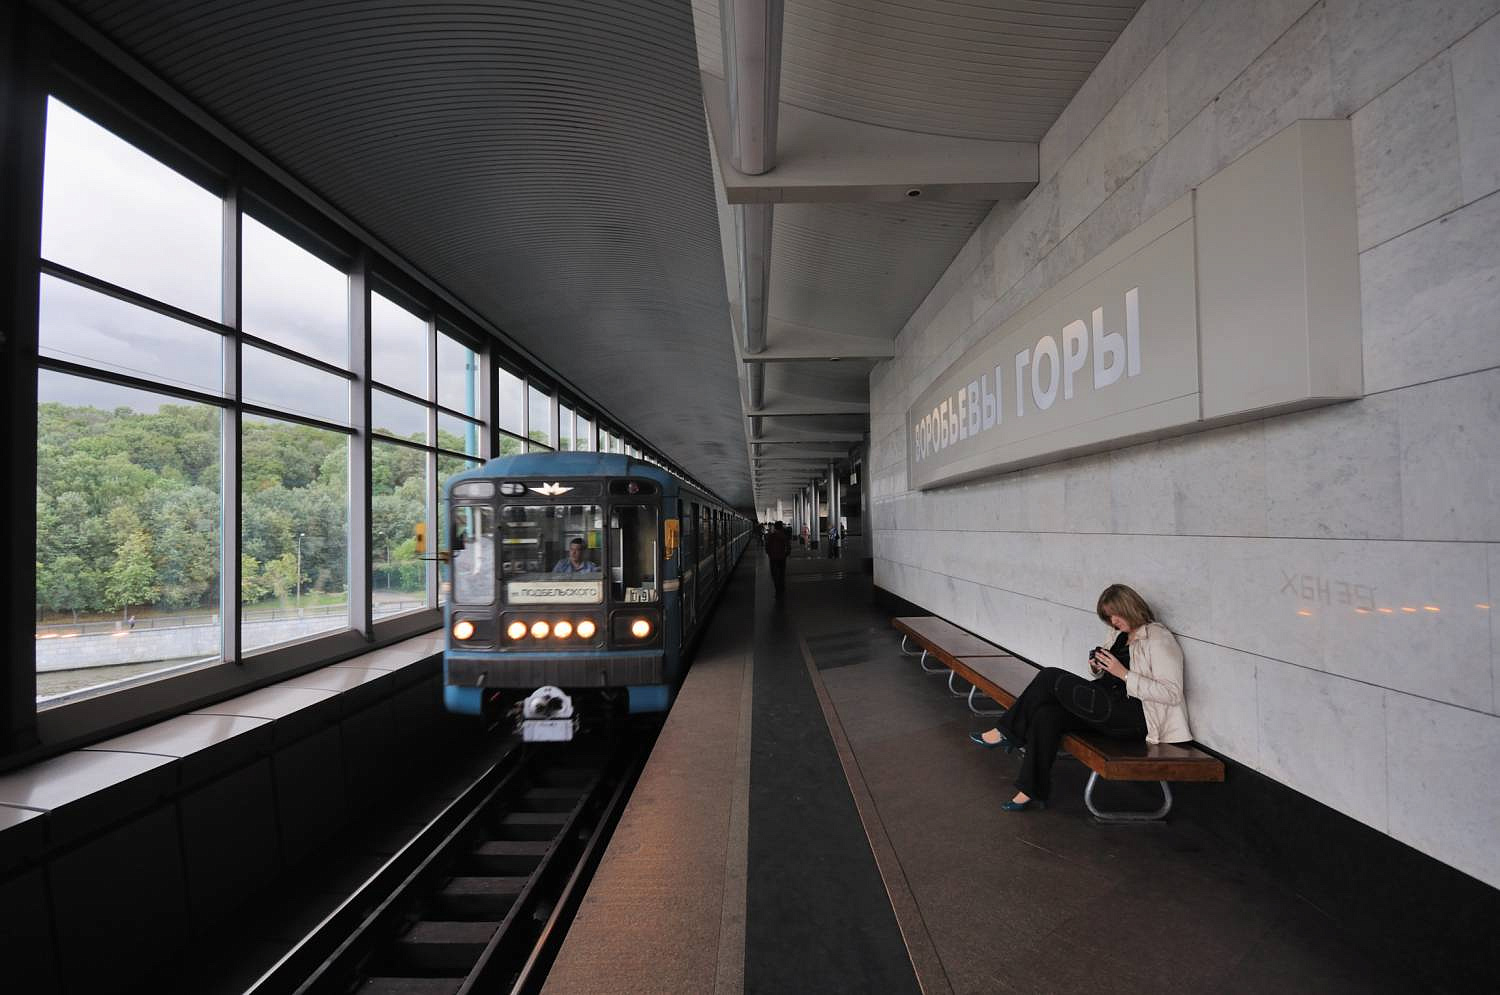 Включи спокойную станцию. Станция метро Воробьевы горы. Станция Воробьевы горы. Московское метро станция Воробьевы горы. Метро «Воробьевы горы» Сокольнической линии.